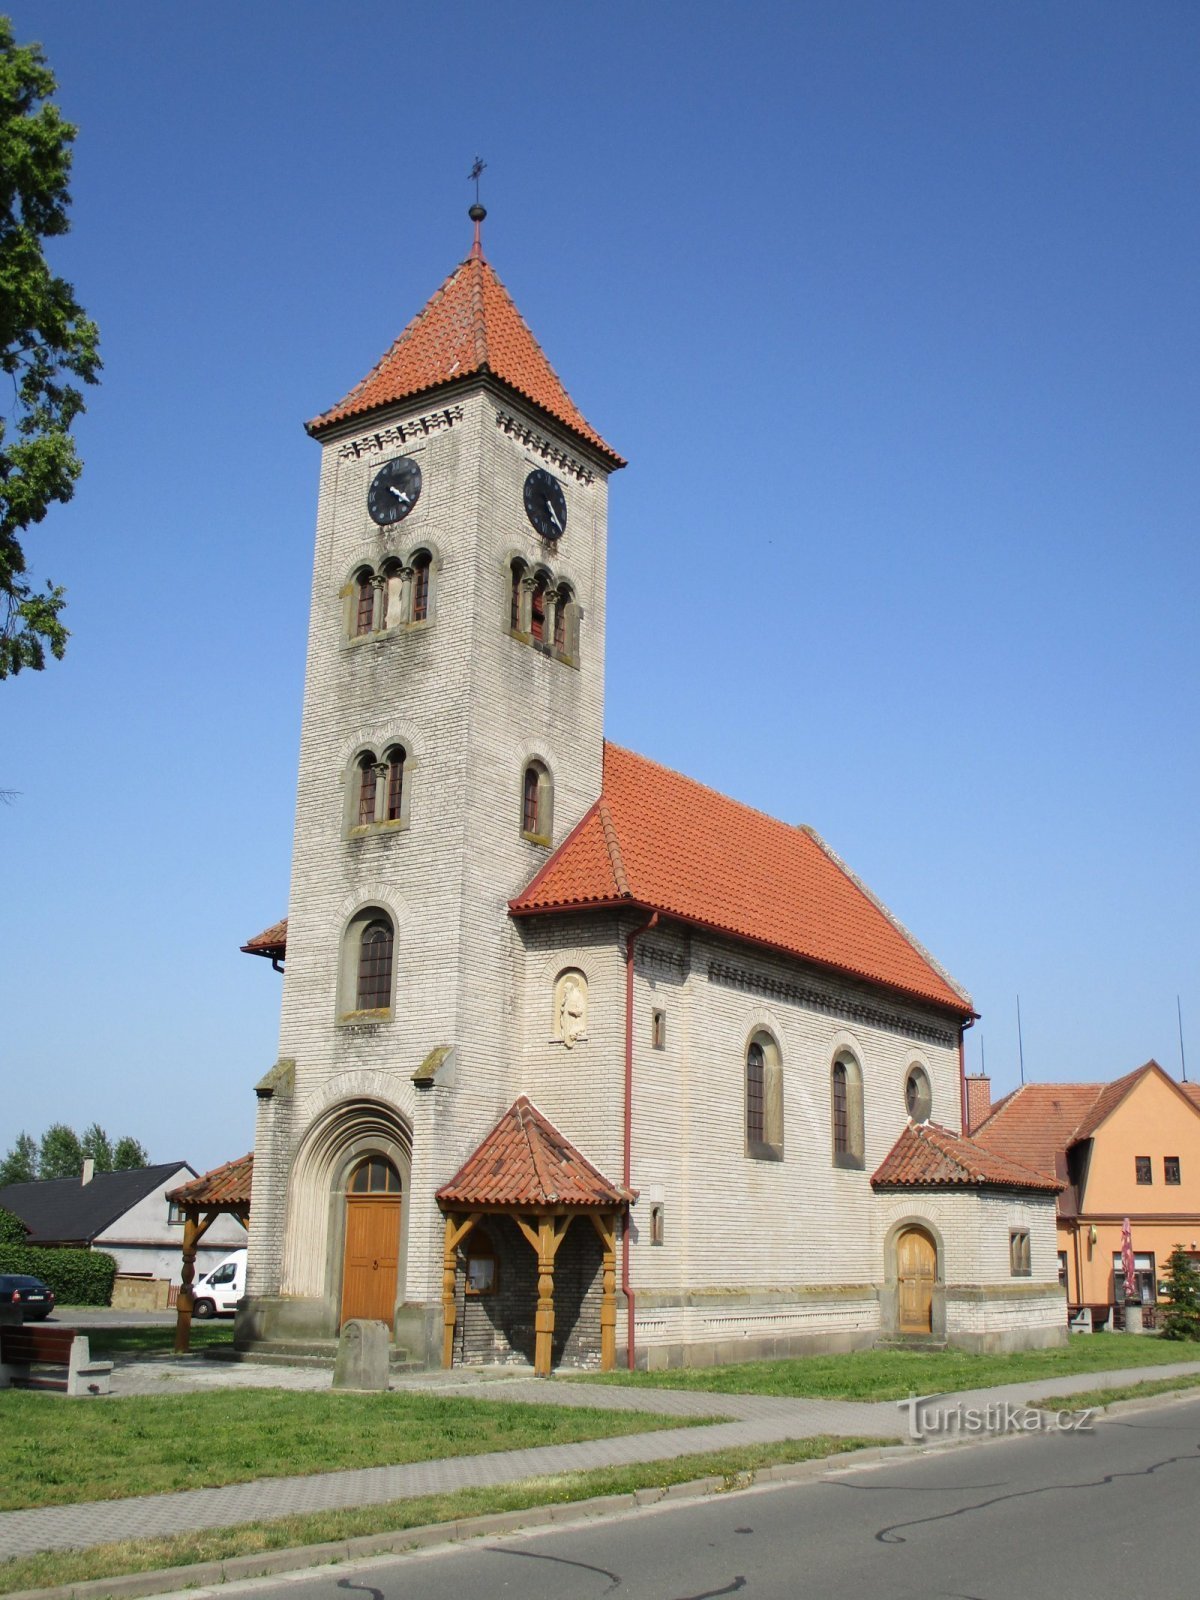 Церковь св. Войтеха (Доланы)